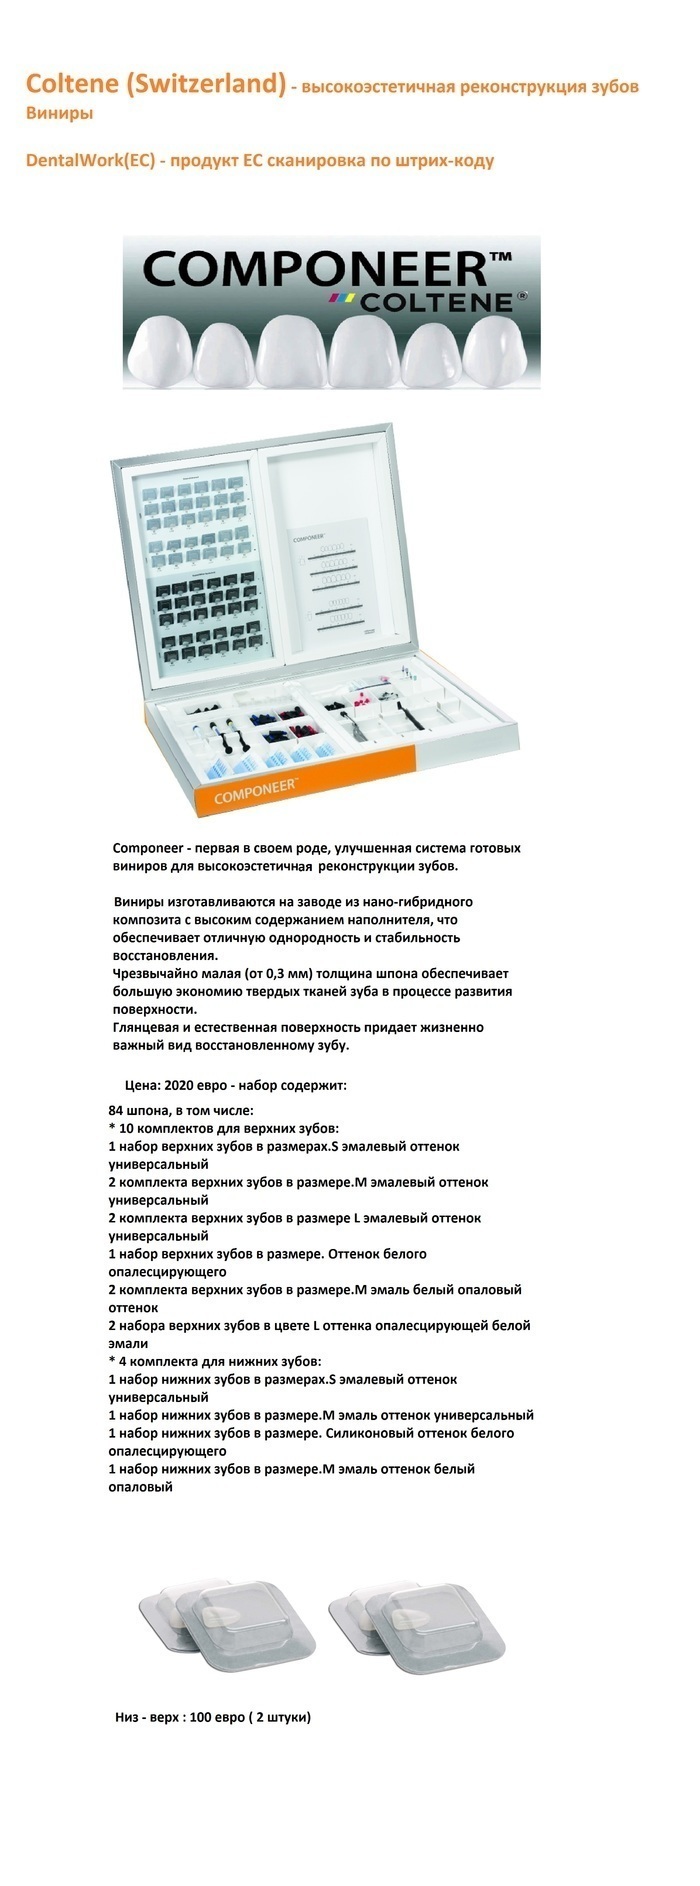 Praxis Dental CE 3M ESPE. Componeer - виниры искуственные с высокой эстетикой Zooble.com.ua